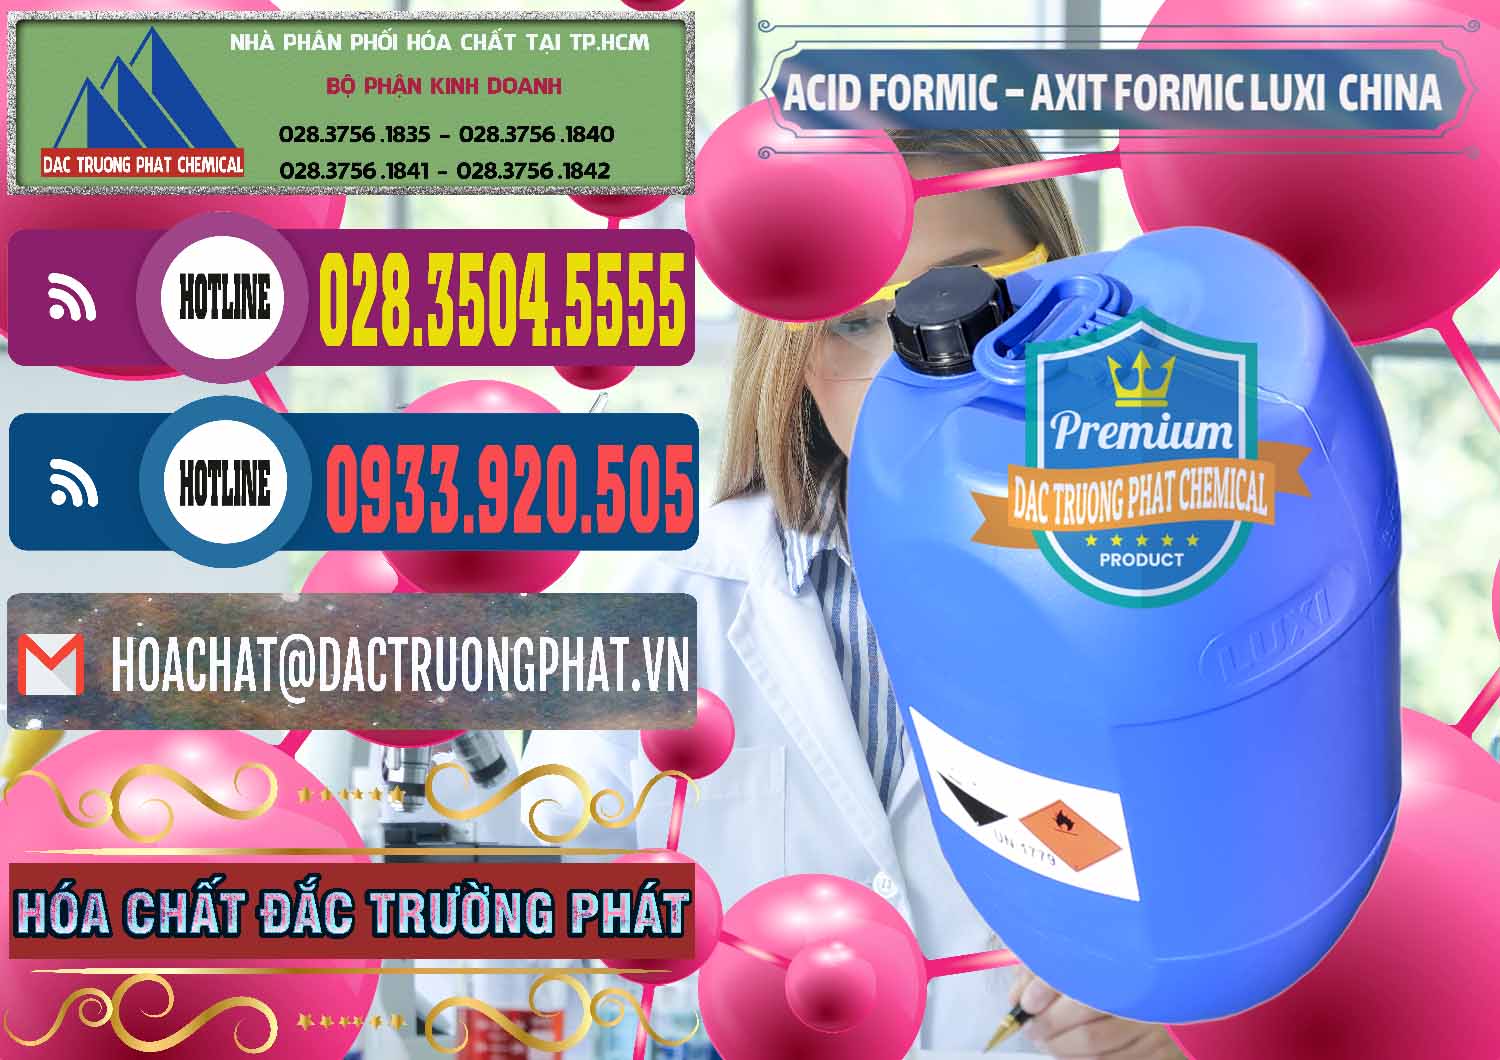 Cty chuyên bán _ cung cấp Acid Formic - Axit Formic Luxi Trung Quốc China - 0029 - Nhà nhập khẩu ( cung cấp ) hóa chất tại TP.HCM - muabanhoachat.com.vn